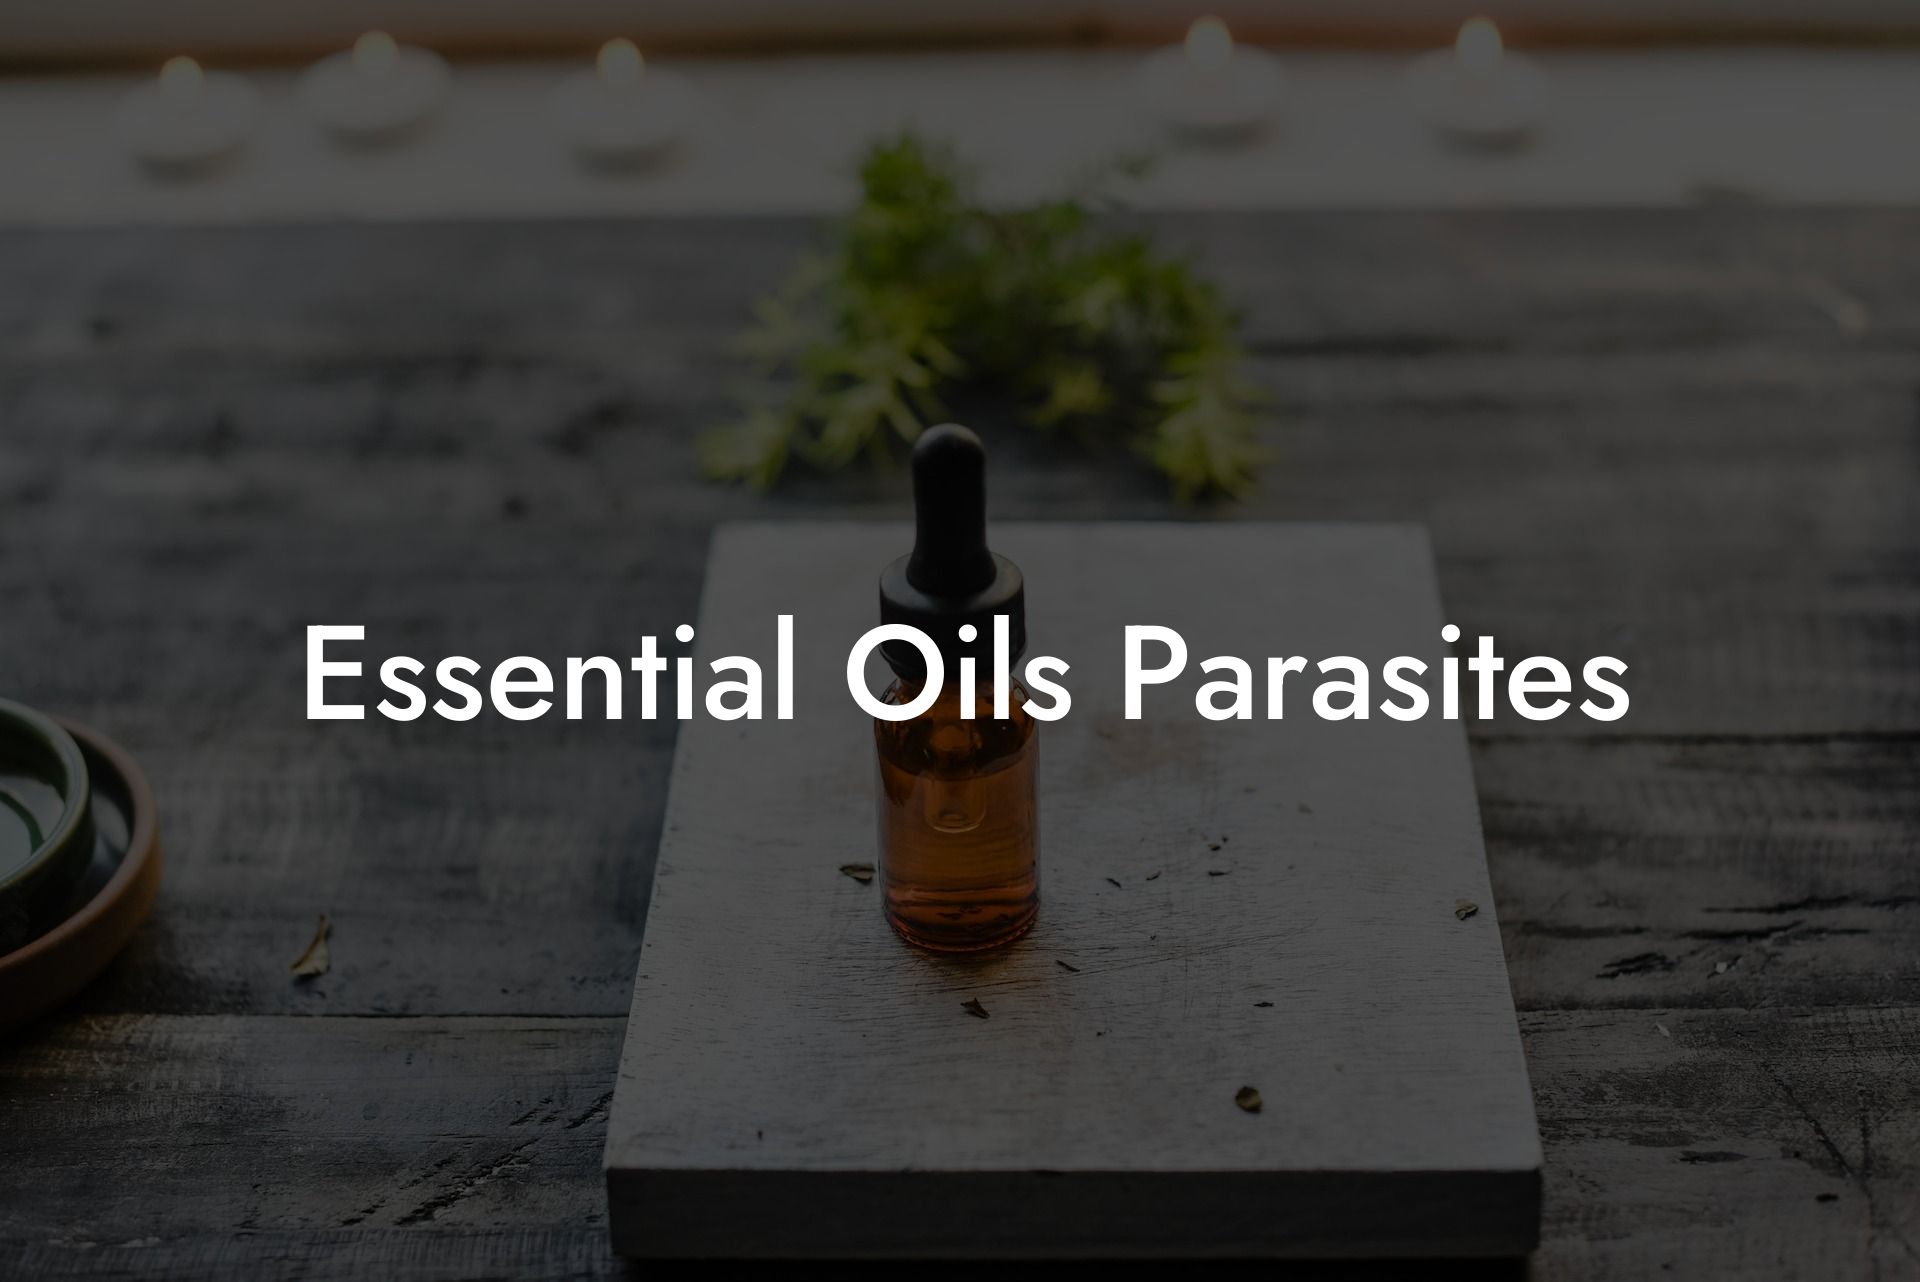 Essential Oils Parasites